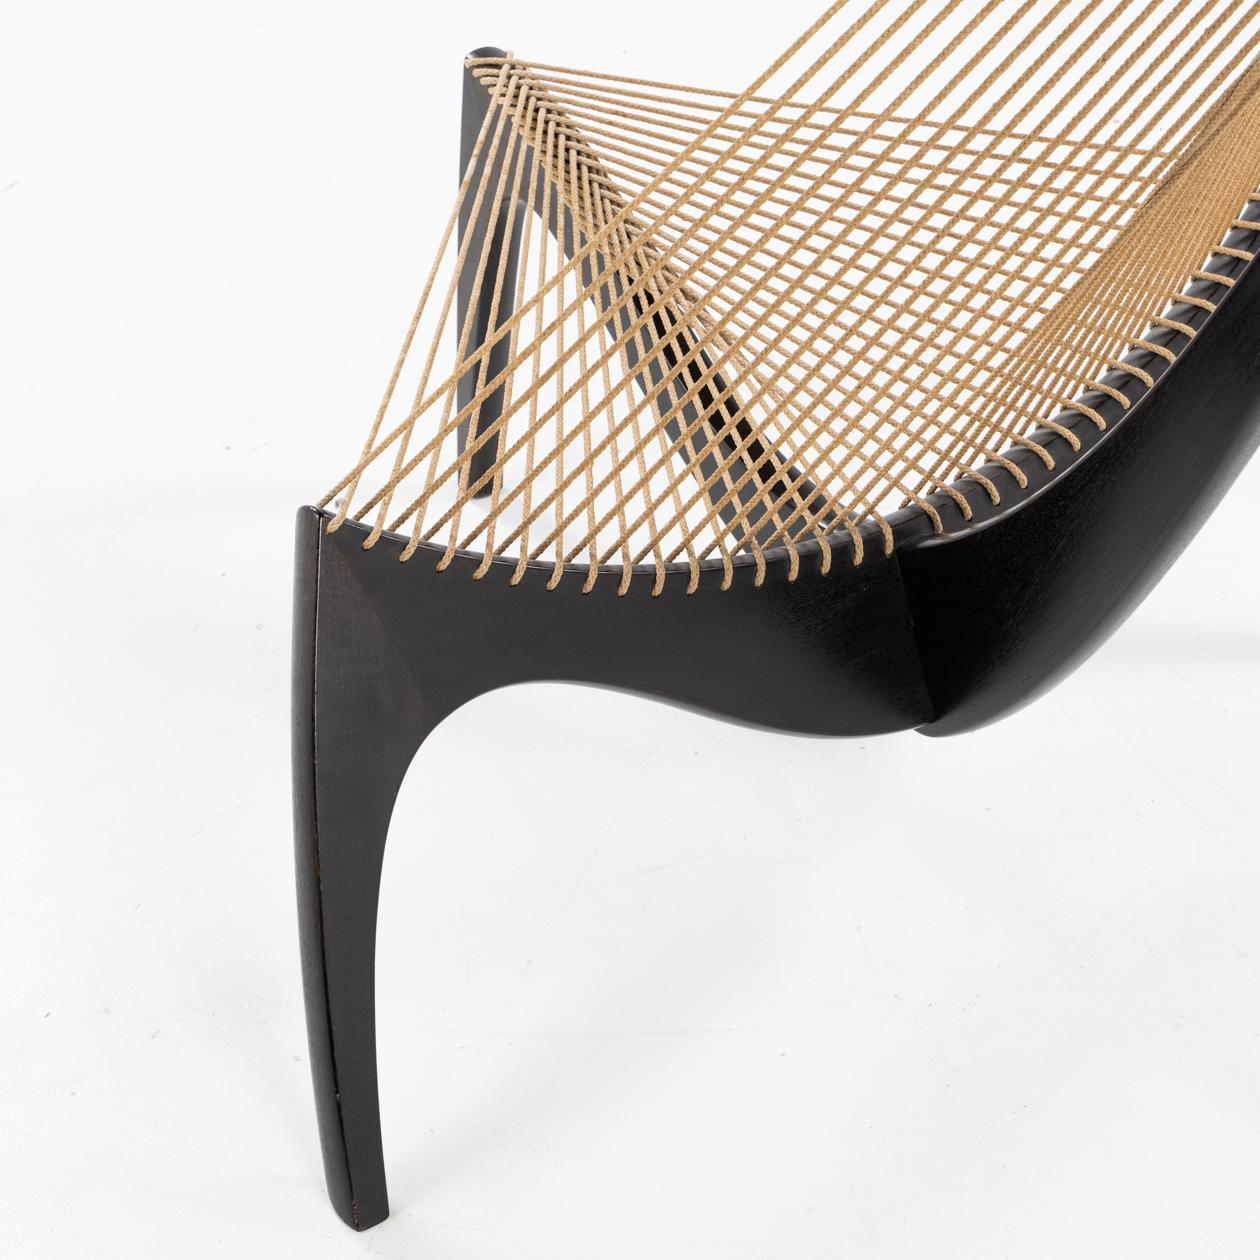 Danish Harp chair by Jørgen Høvelskov